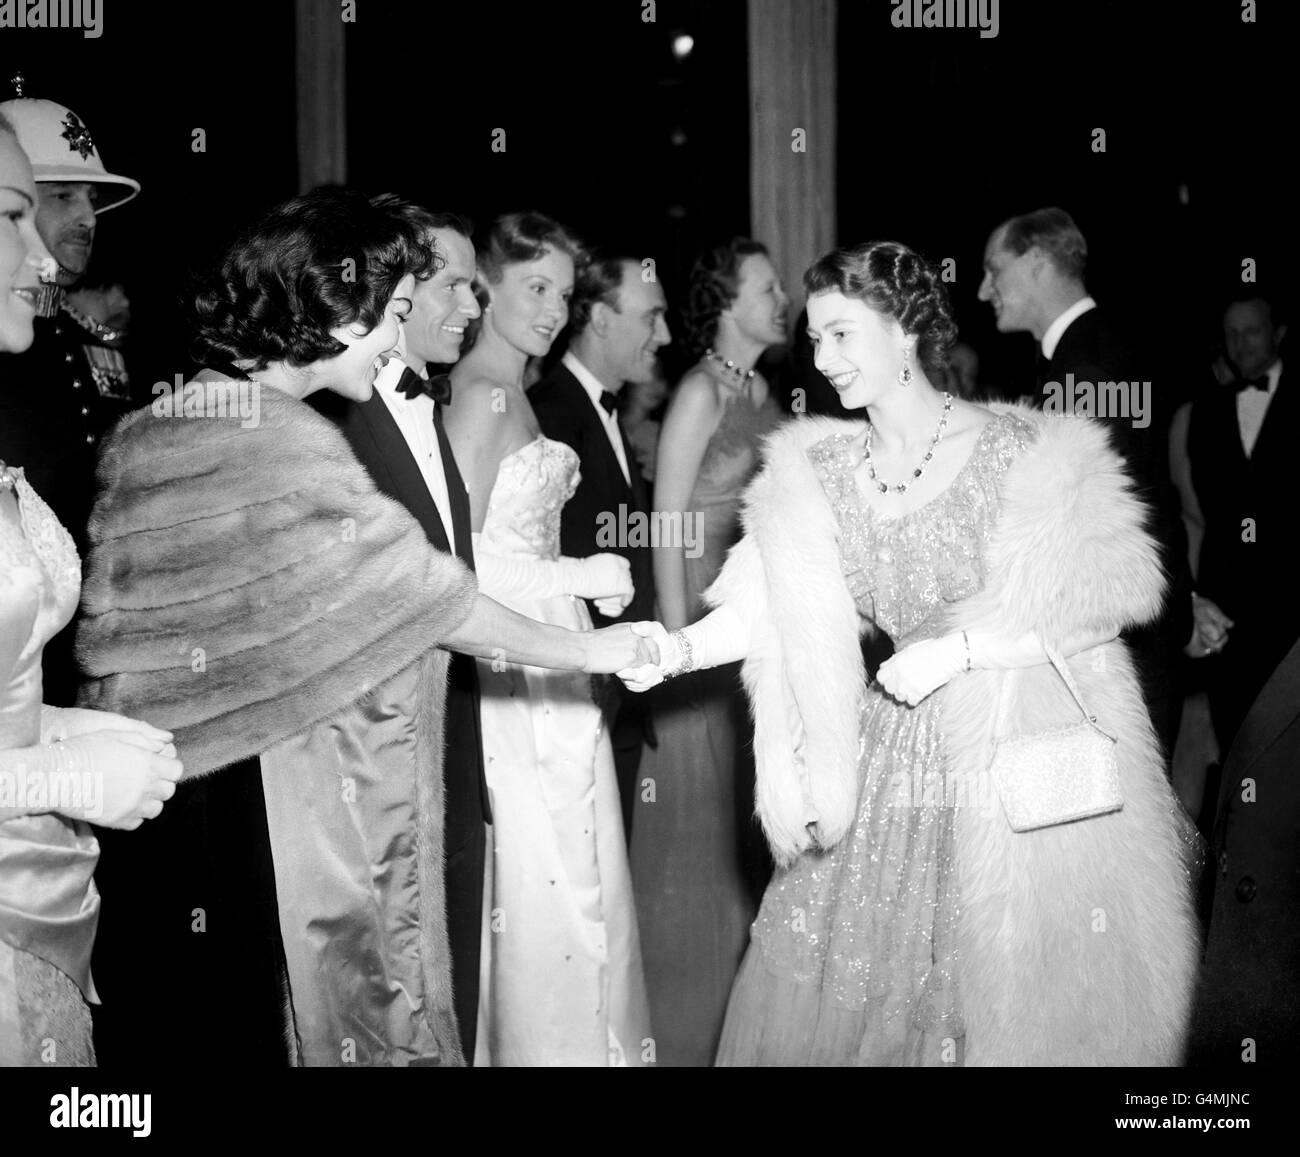 La princesa Elizabeth sacude las manos con la actriz estadounidense Ava Gardner. El siguiente en la línea es el marido de Ava, el cantante Frank Sinatra. Estaban participando en el show Midnight Matinee en el London Coliseum. Foto de stock